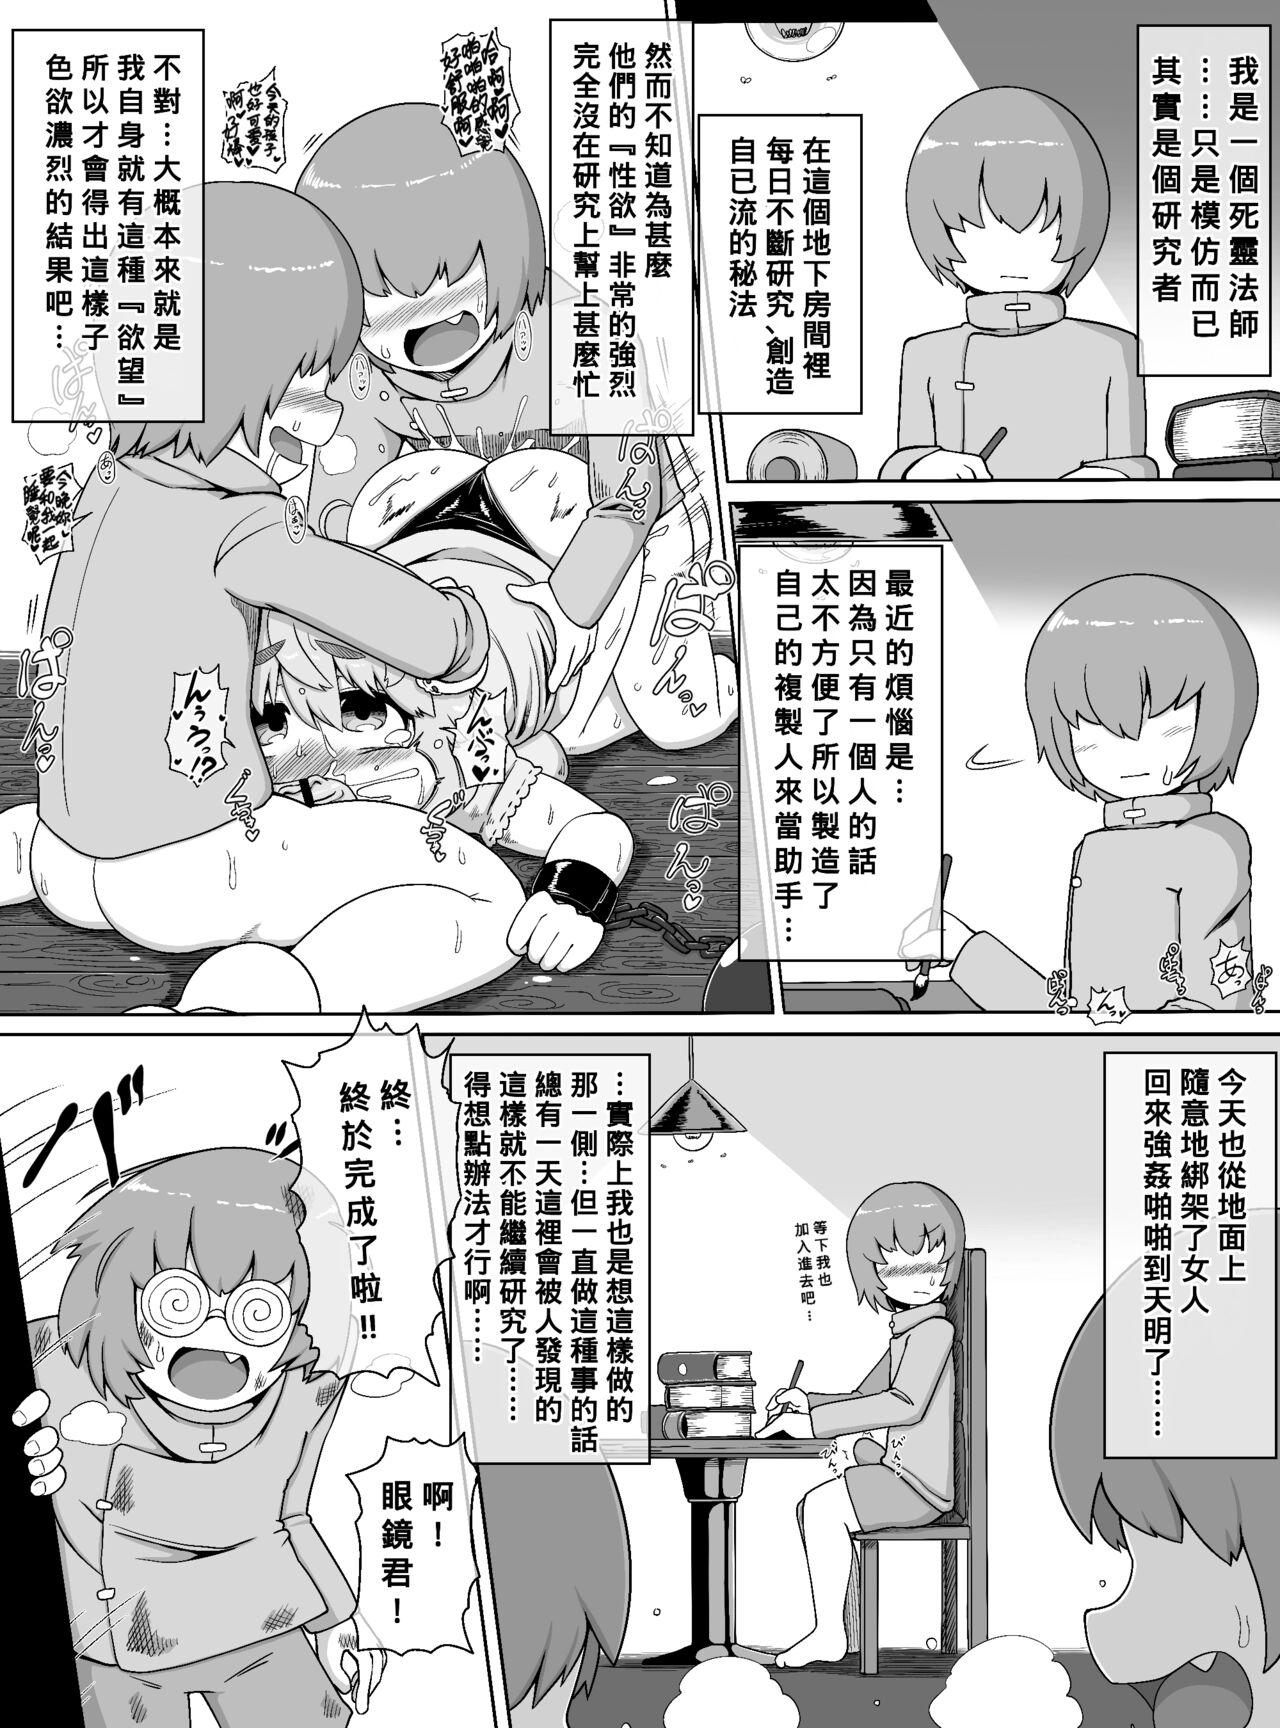 Family Choushin Bakunyuu Muchimuchi Kyonshii ga Kyokon Shota Gundan no Seishori Onaho ni sareru dake no Manga - Original Real - Page 2